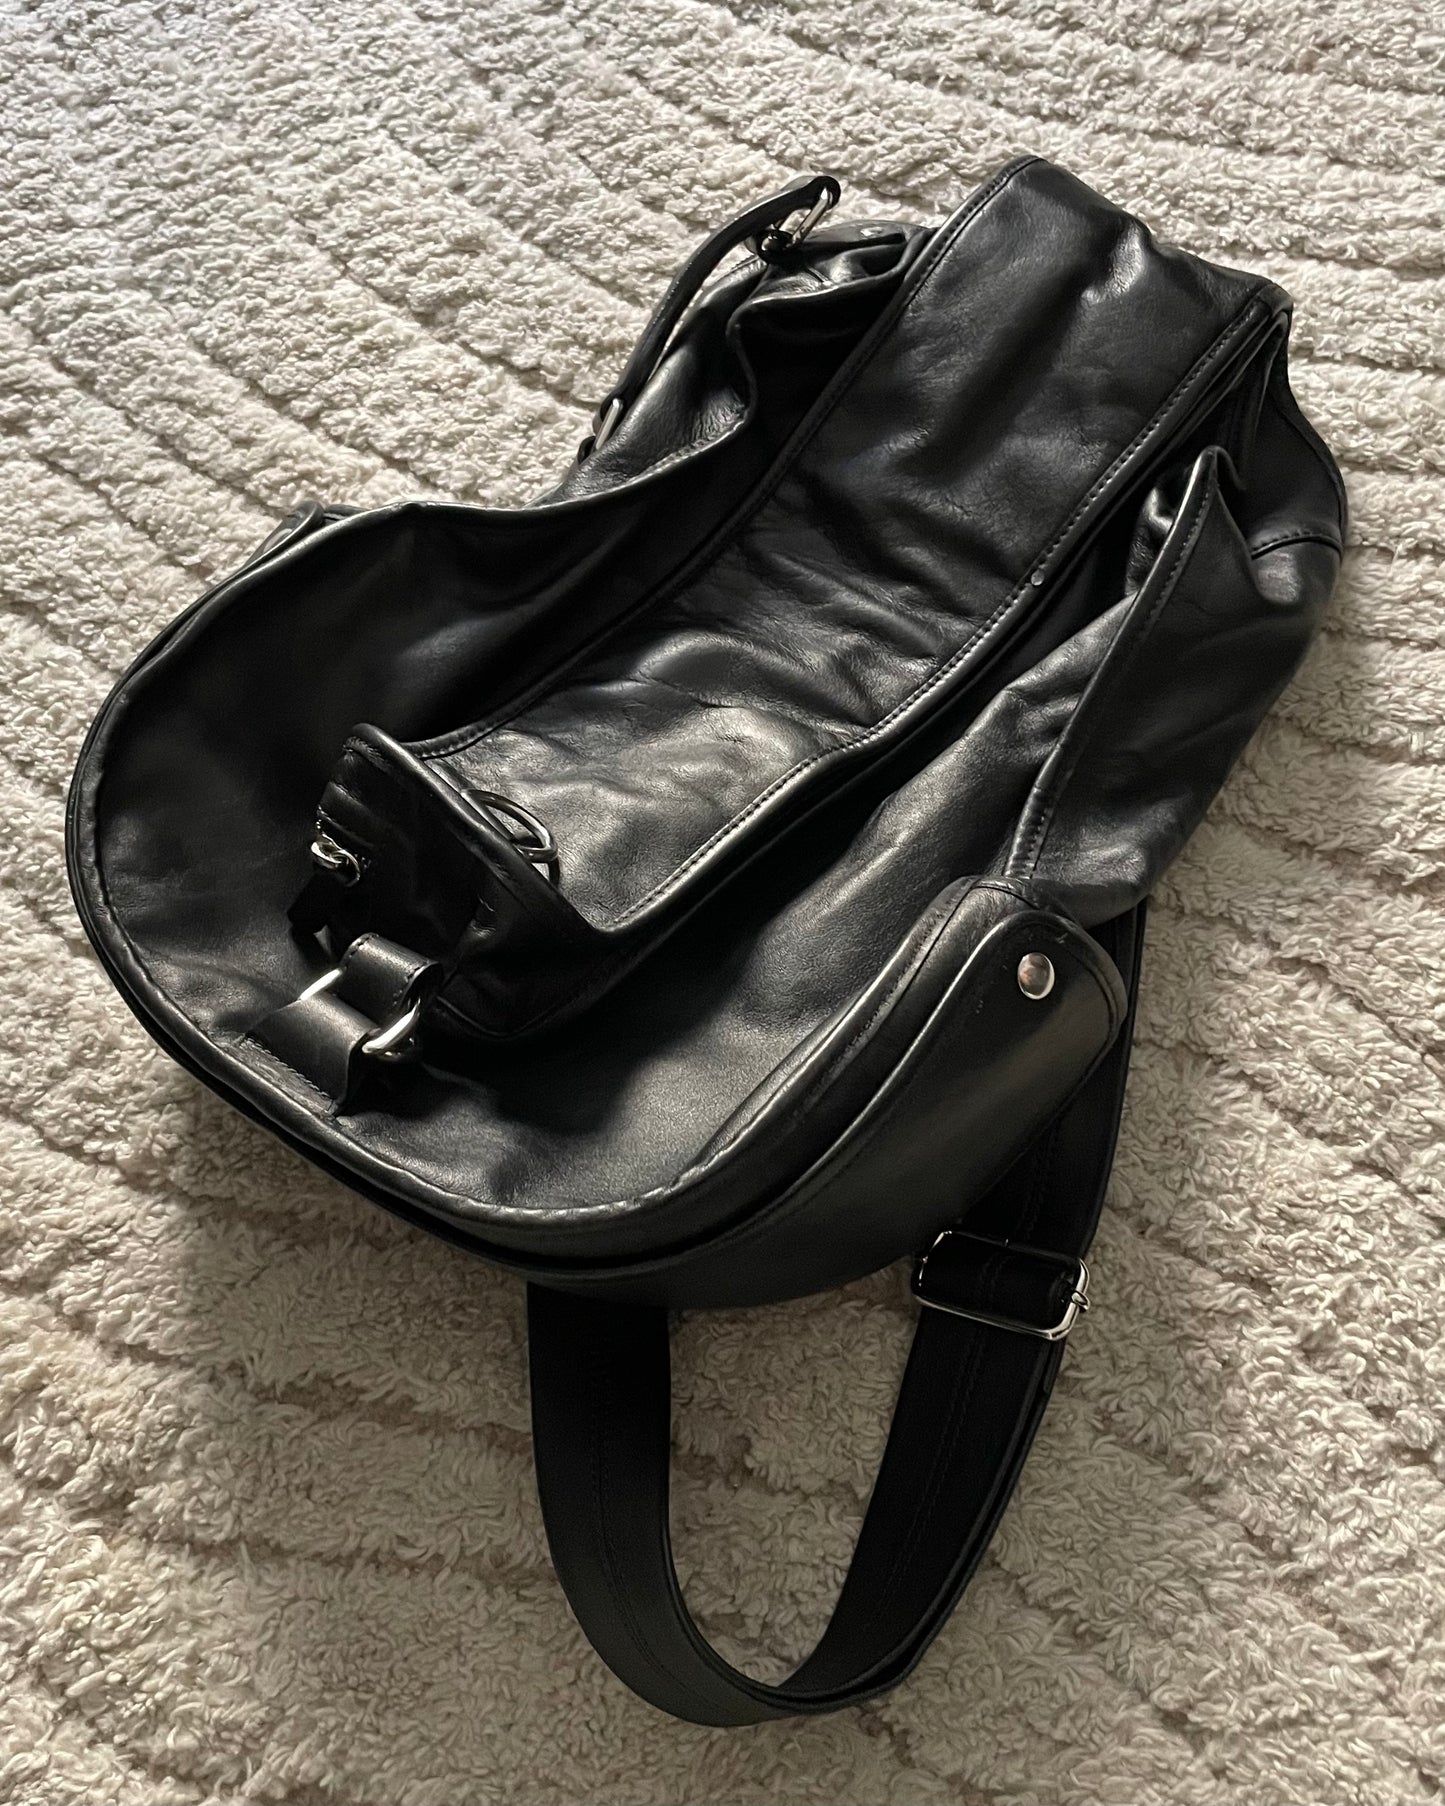 SS2008 Maison Margiela x H&M Guitar Leather Bag RE-EDITION